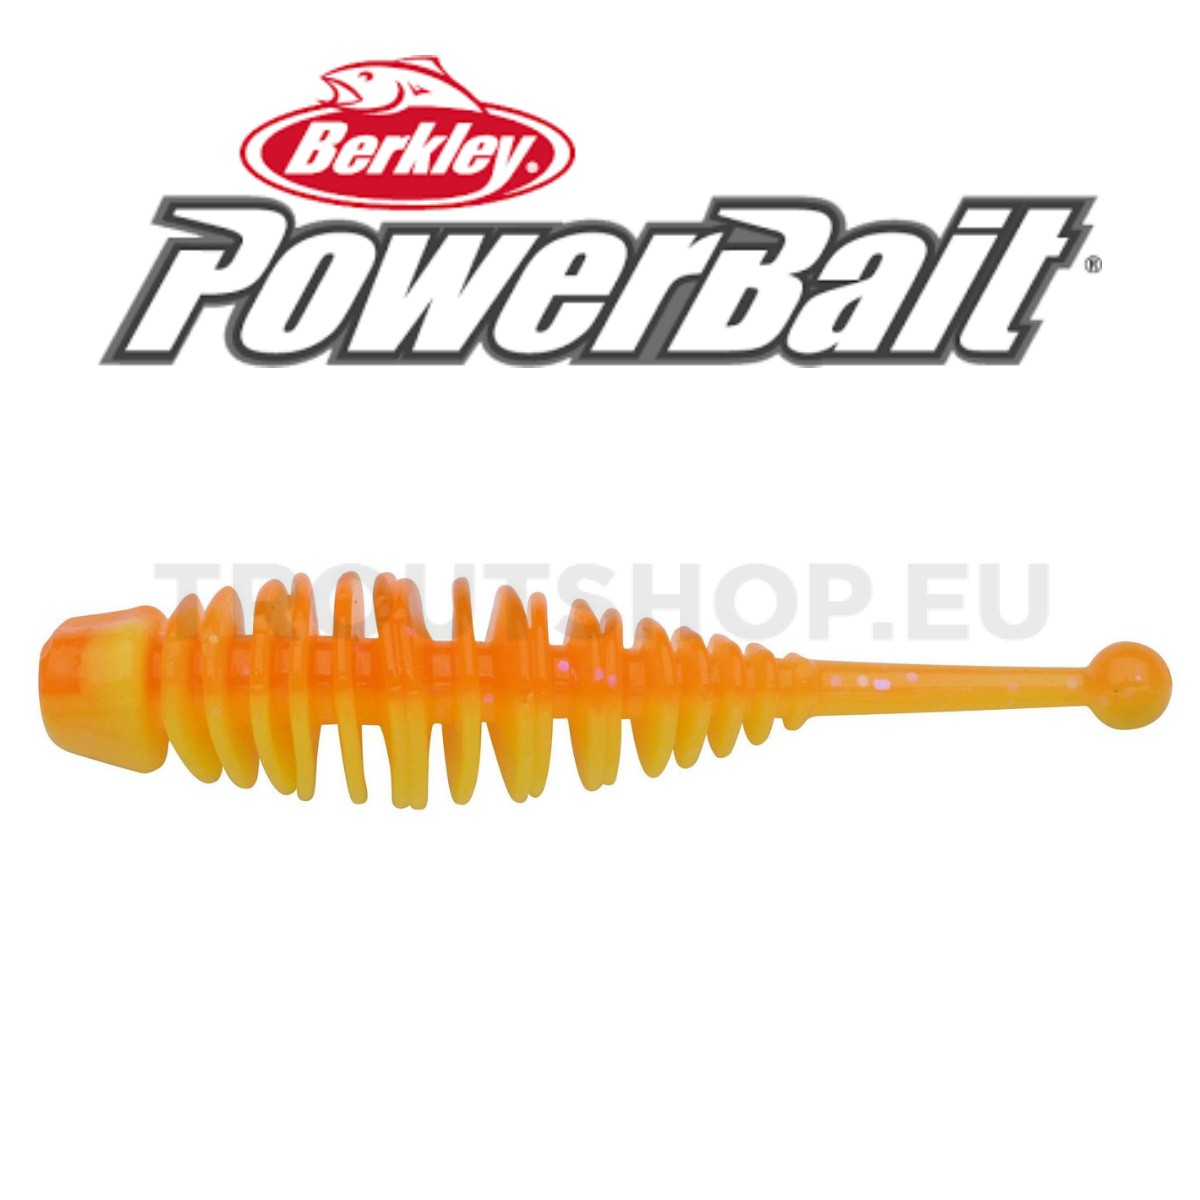 Berkley Powerbait Naiad – Garlic – 70mm – Orange Yellow - TroutShop